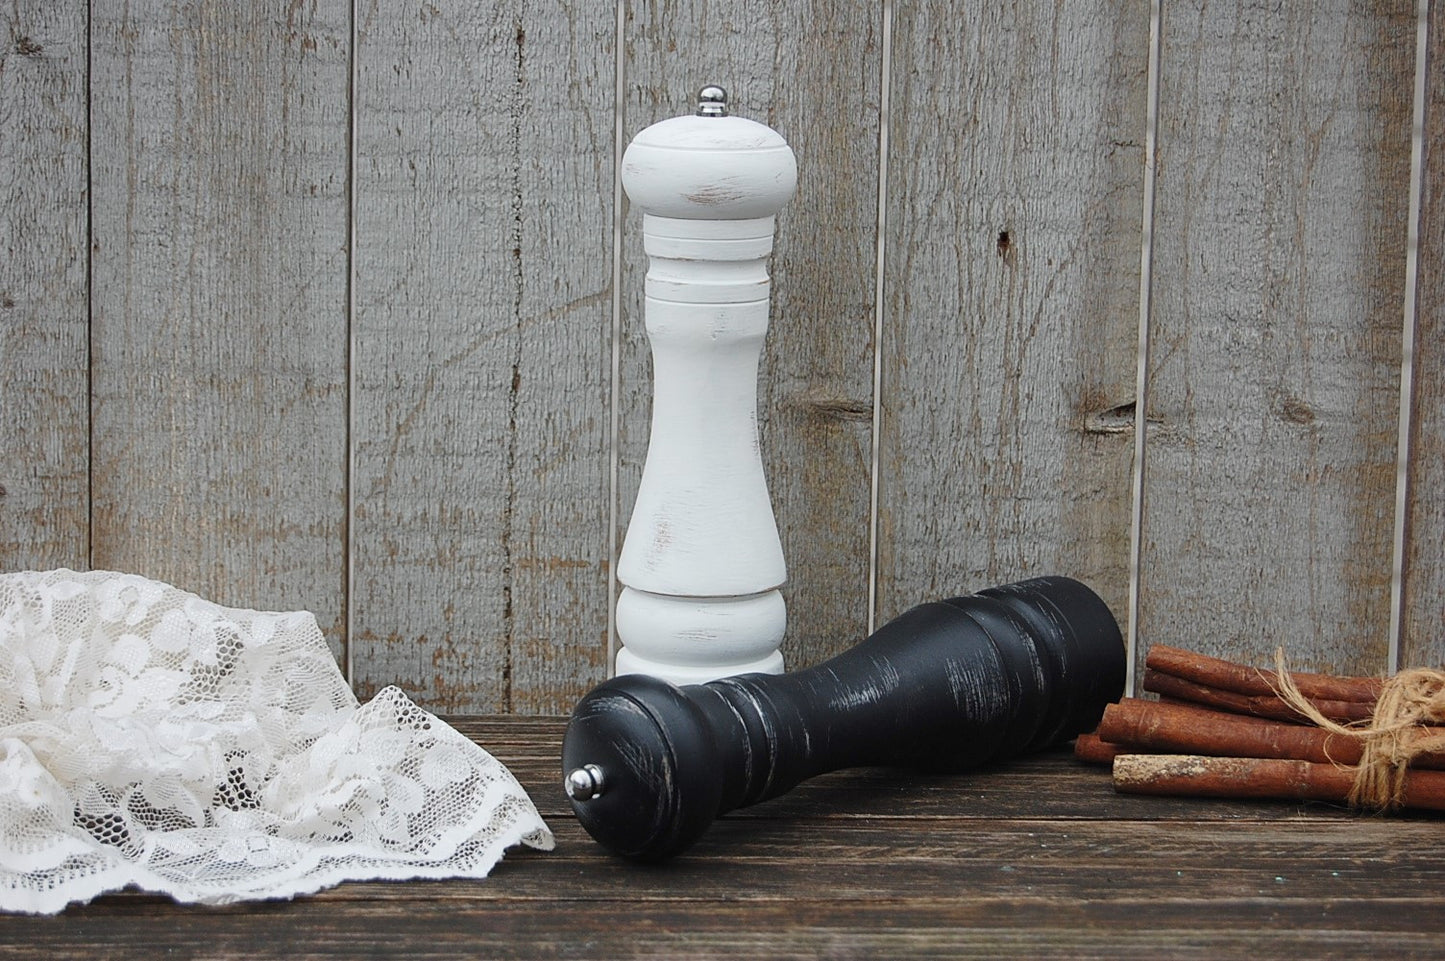 Salt & pepper grinder set